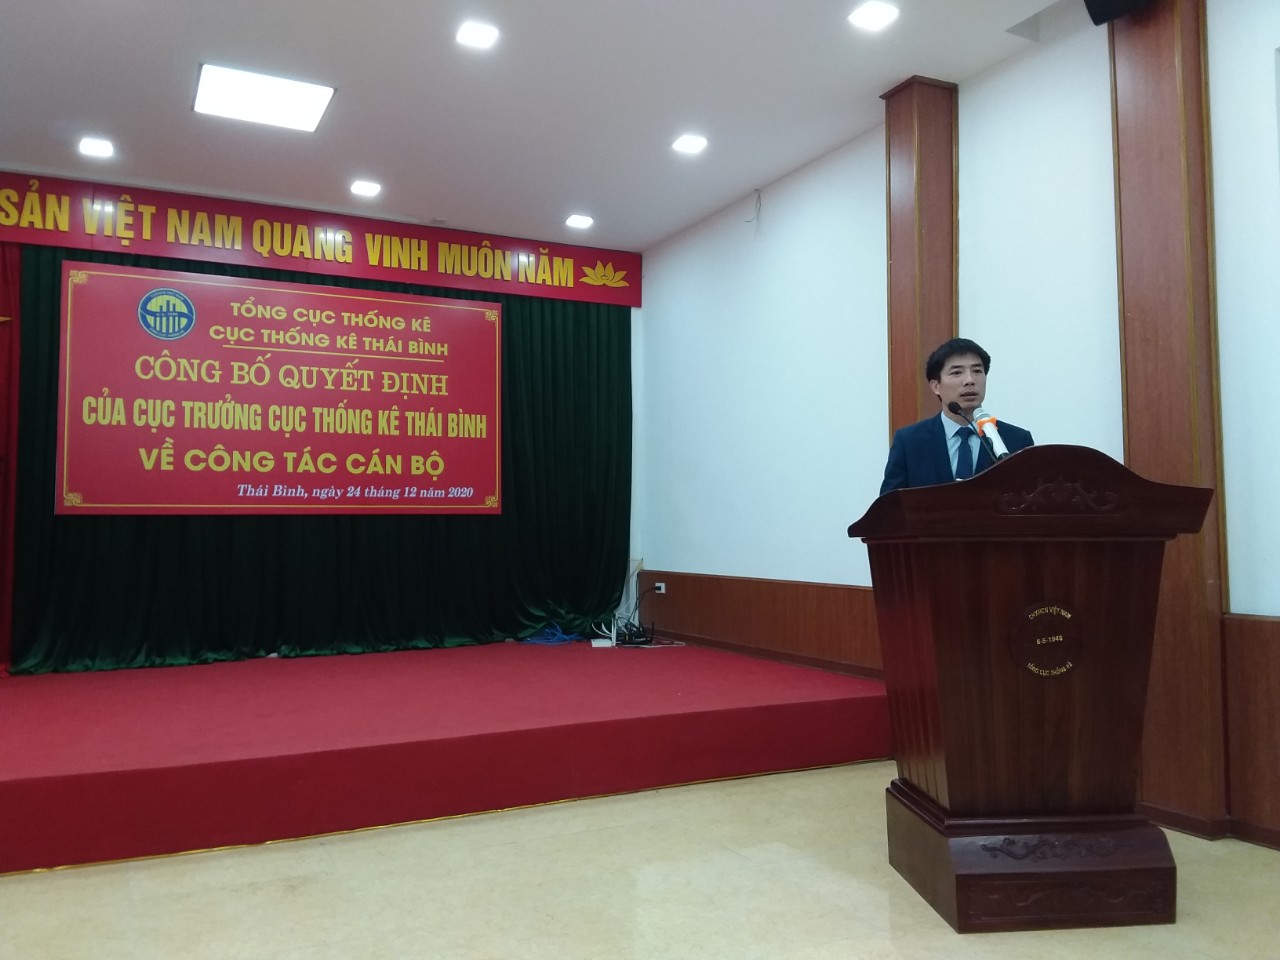 Hội nghị công bố Quyết định của Cục trưởng Cục Thống kê tỉnh Thái Bình về công tác cán bộ